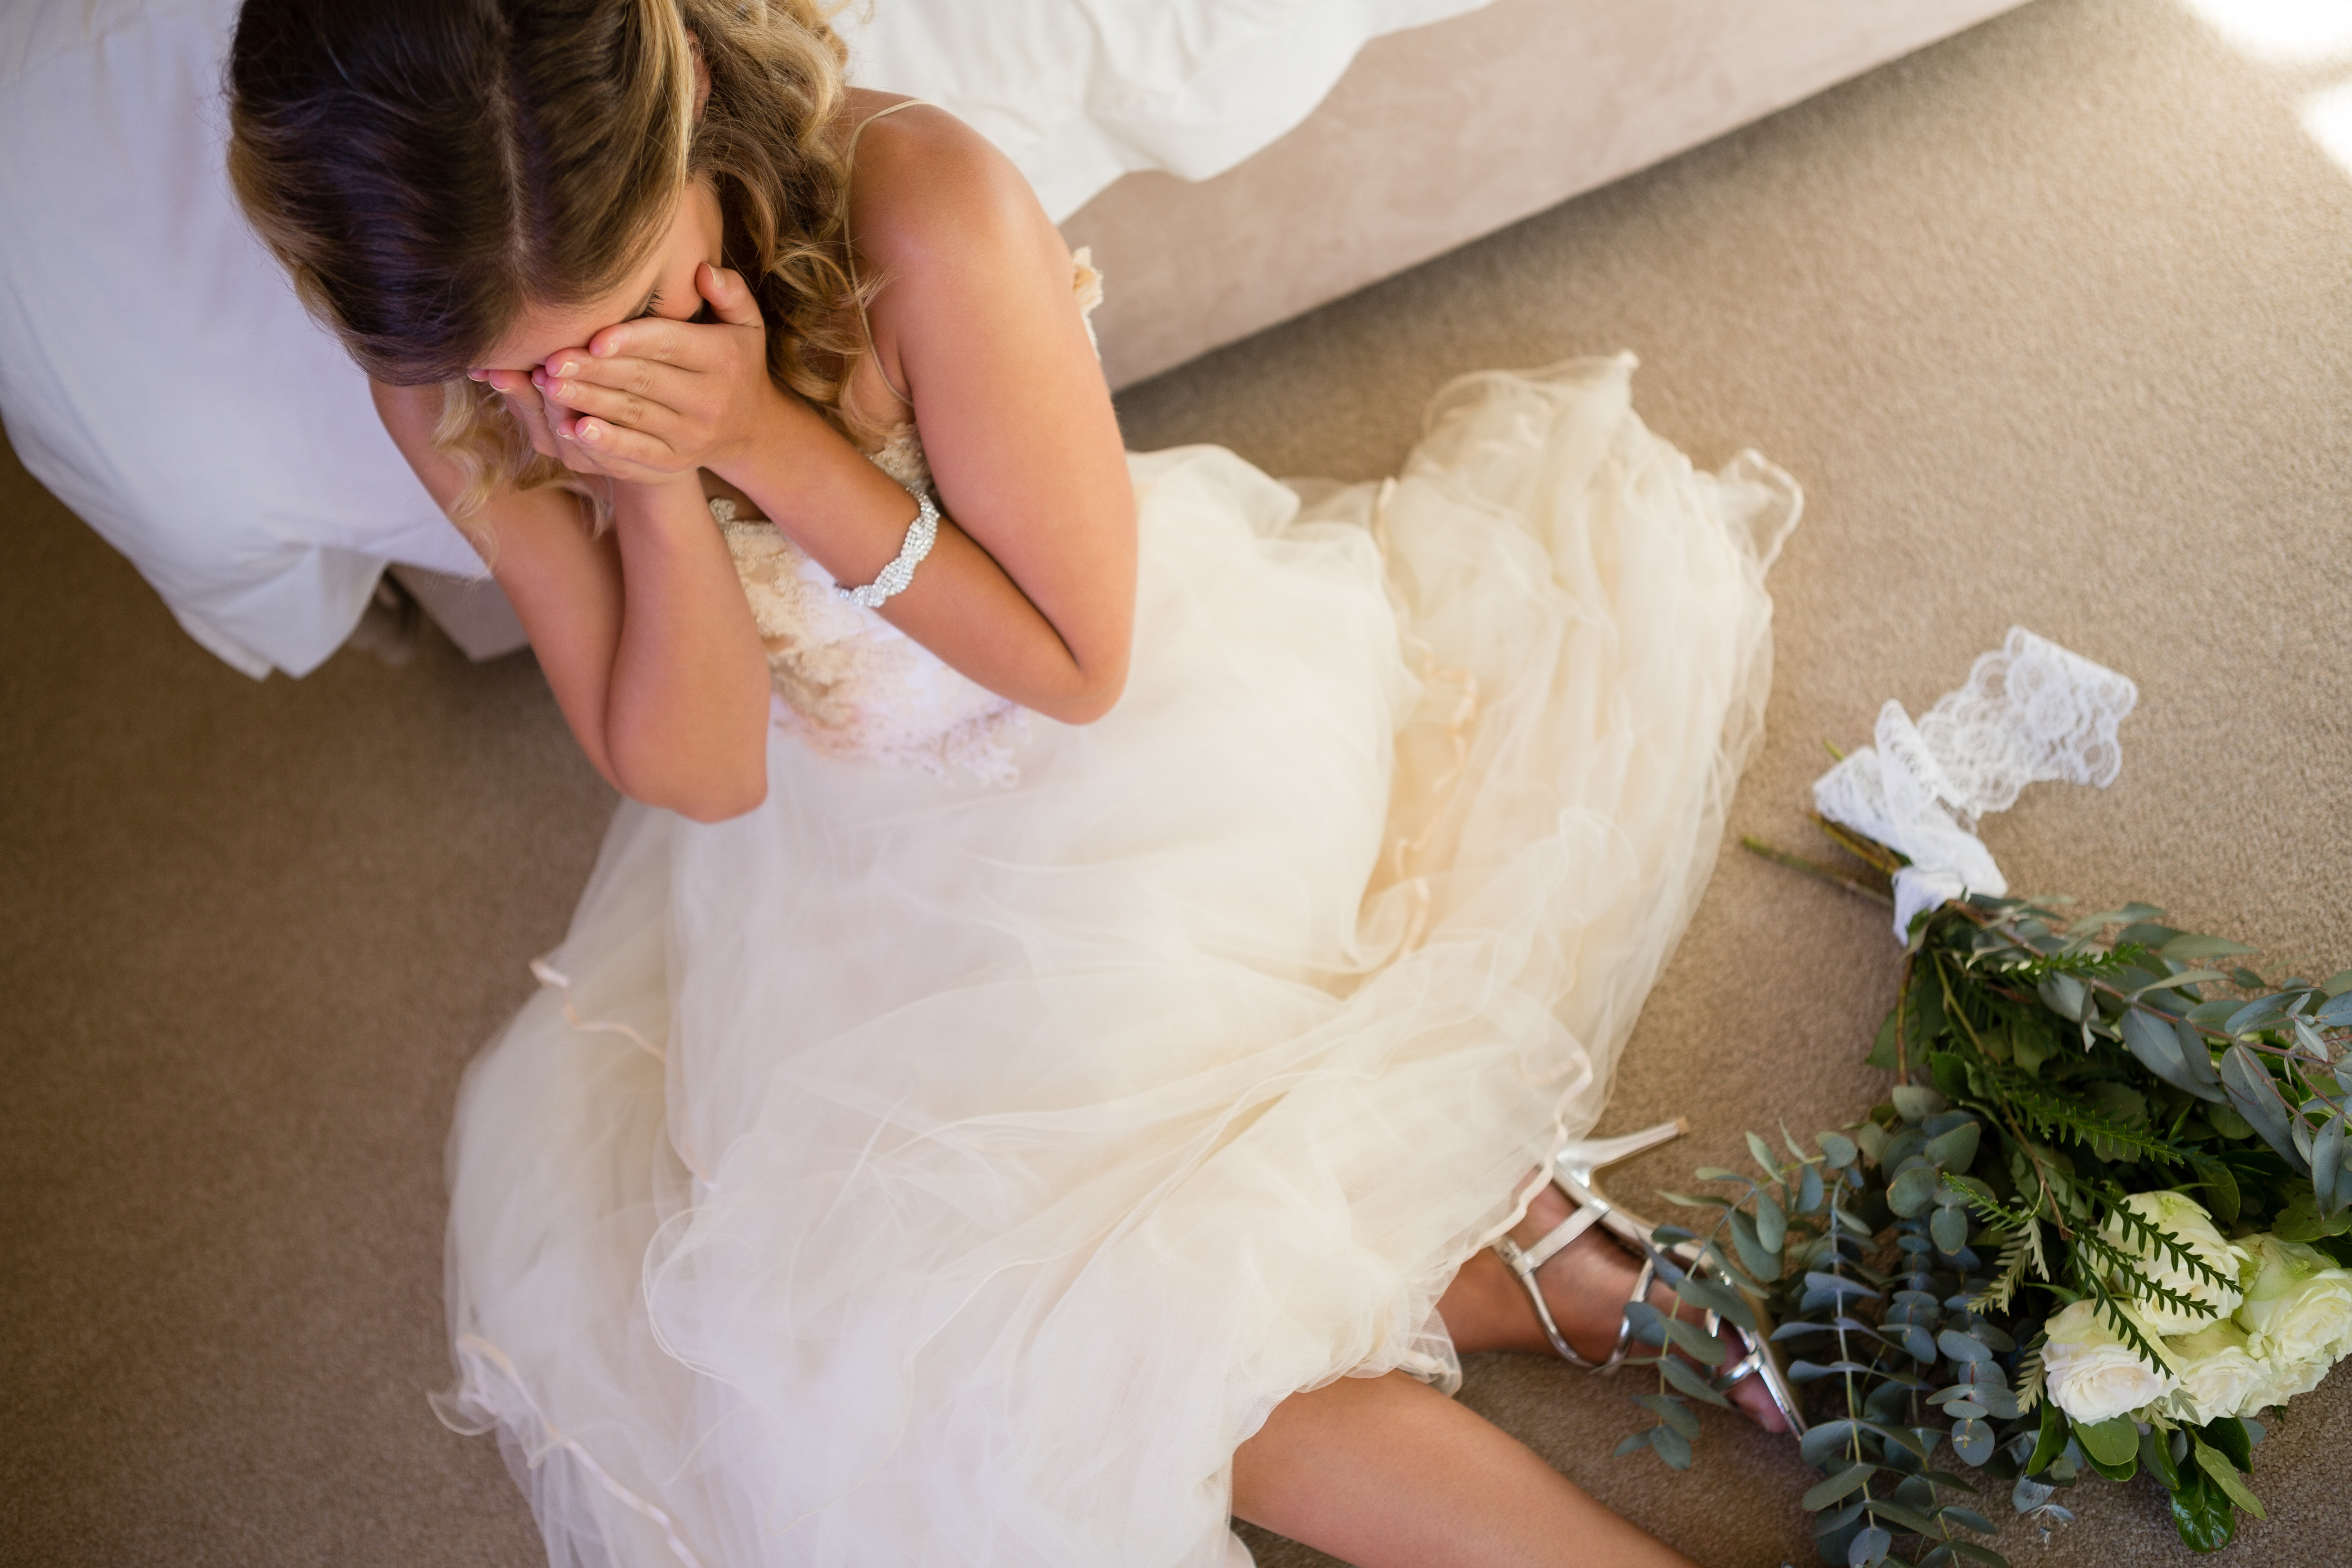 Una novia llora en el suelo mientras se apoya en una cama. | Foto: Shutterstock